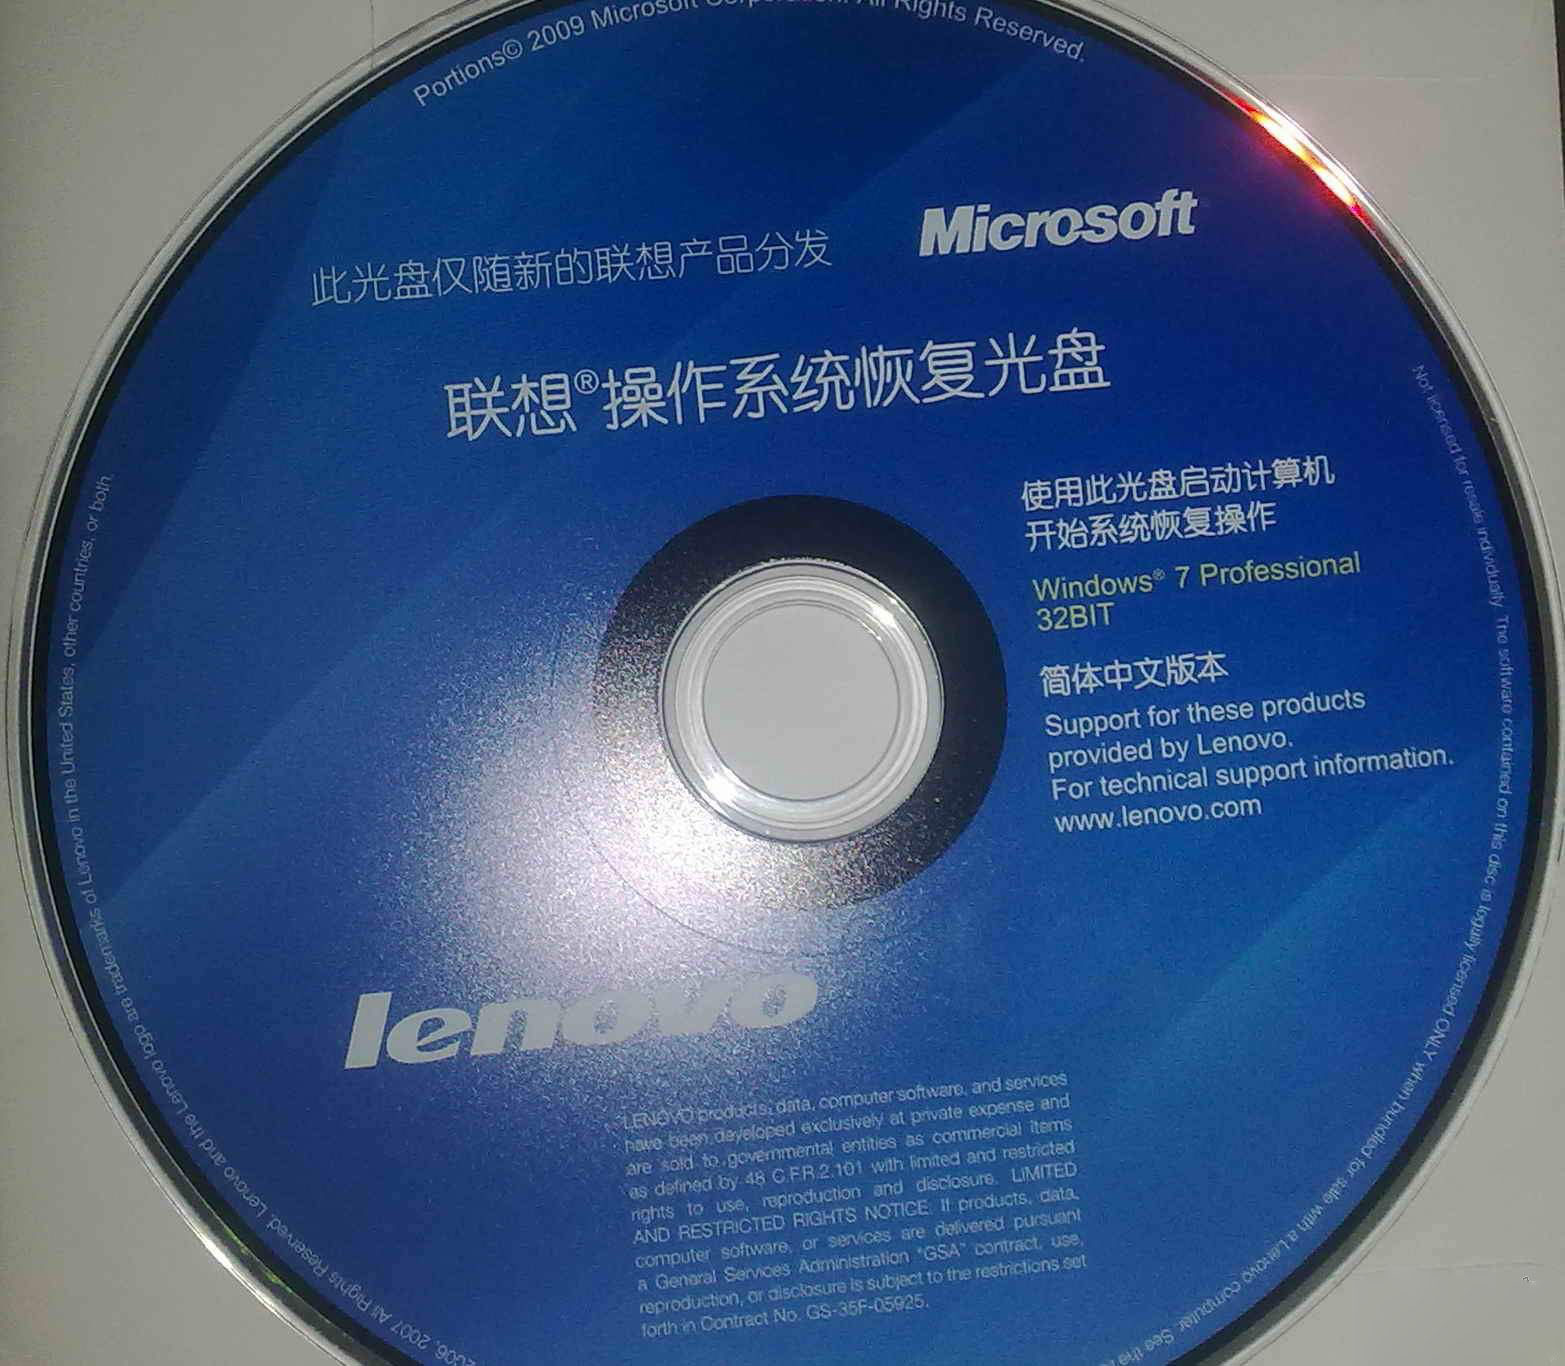 Lenovo Windows 7 Oem Iso Torrent